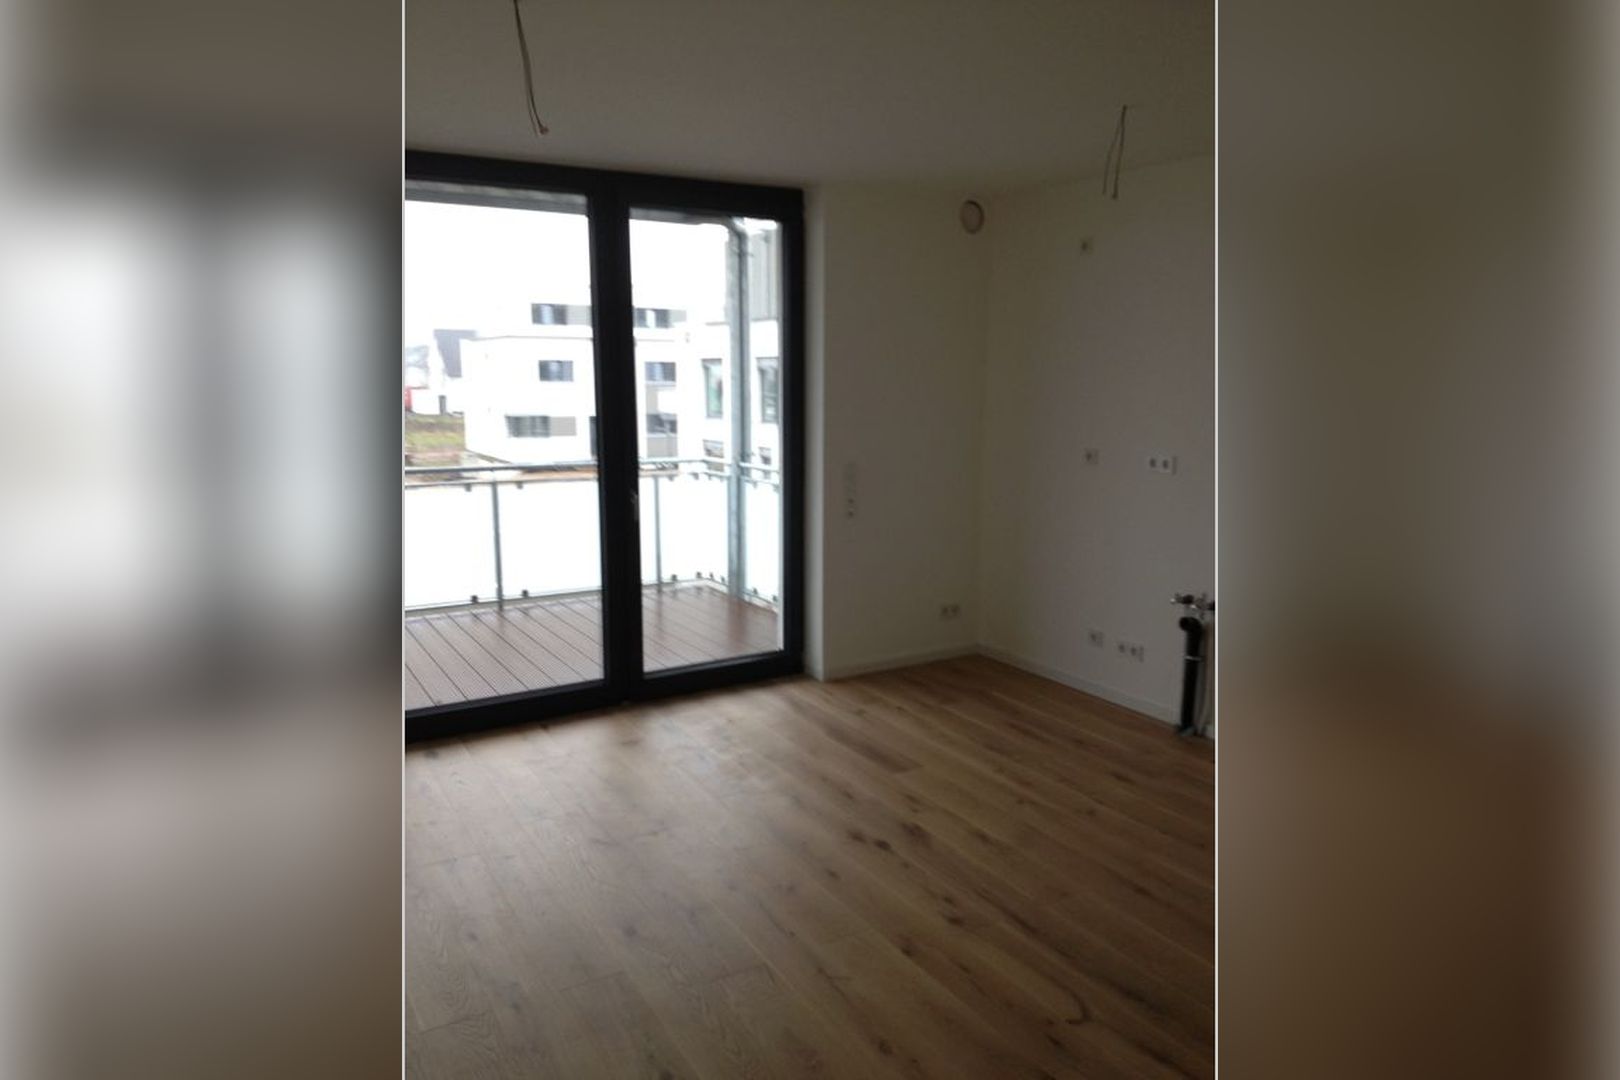 Immobilie Nr.Köln 003.5 - 5-Raum-Wohnung mit Wintergartenküche, 2 Bädern u. großem Balkon  - Bild 5.jpg